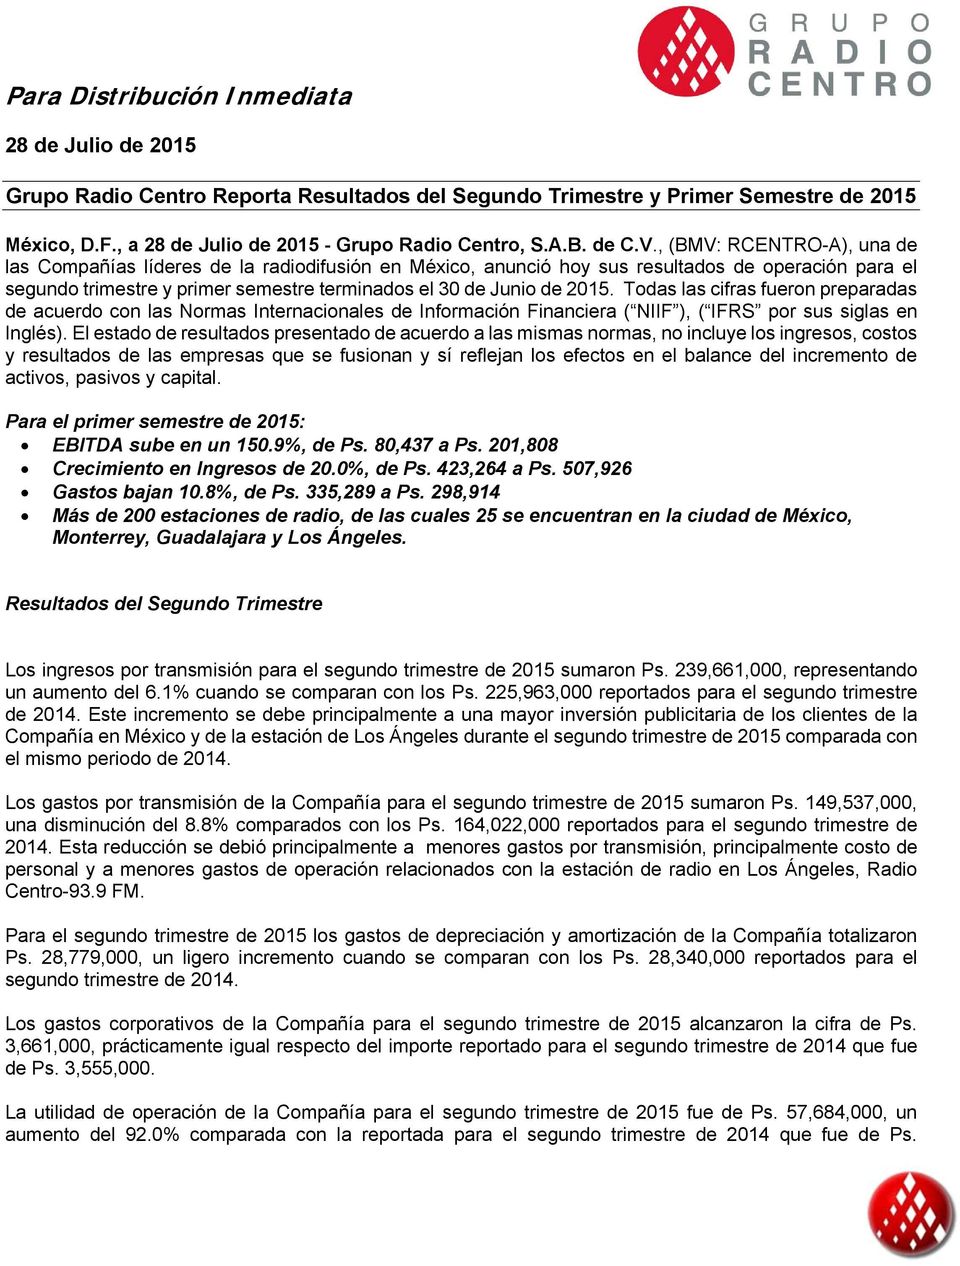 , (BMV: RCENTRO-A), una de las Compañías líderes de la radiodifusión en México, anunció hoy sus resultados de operación para el segundo trimestre y primer semestre terminados el 30 de Junio de 2015.